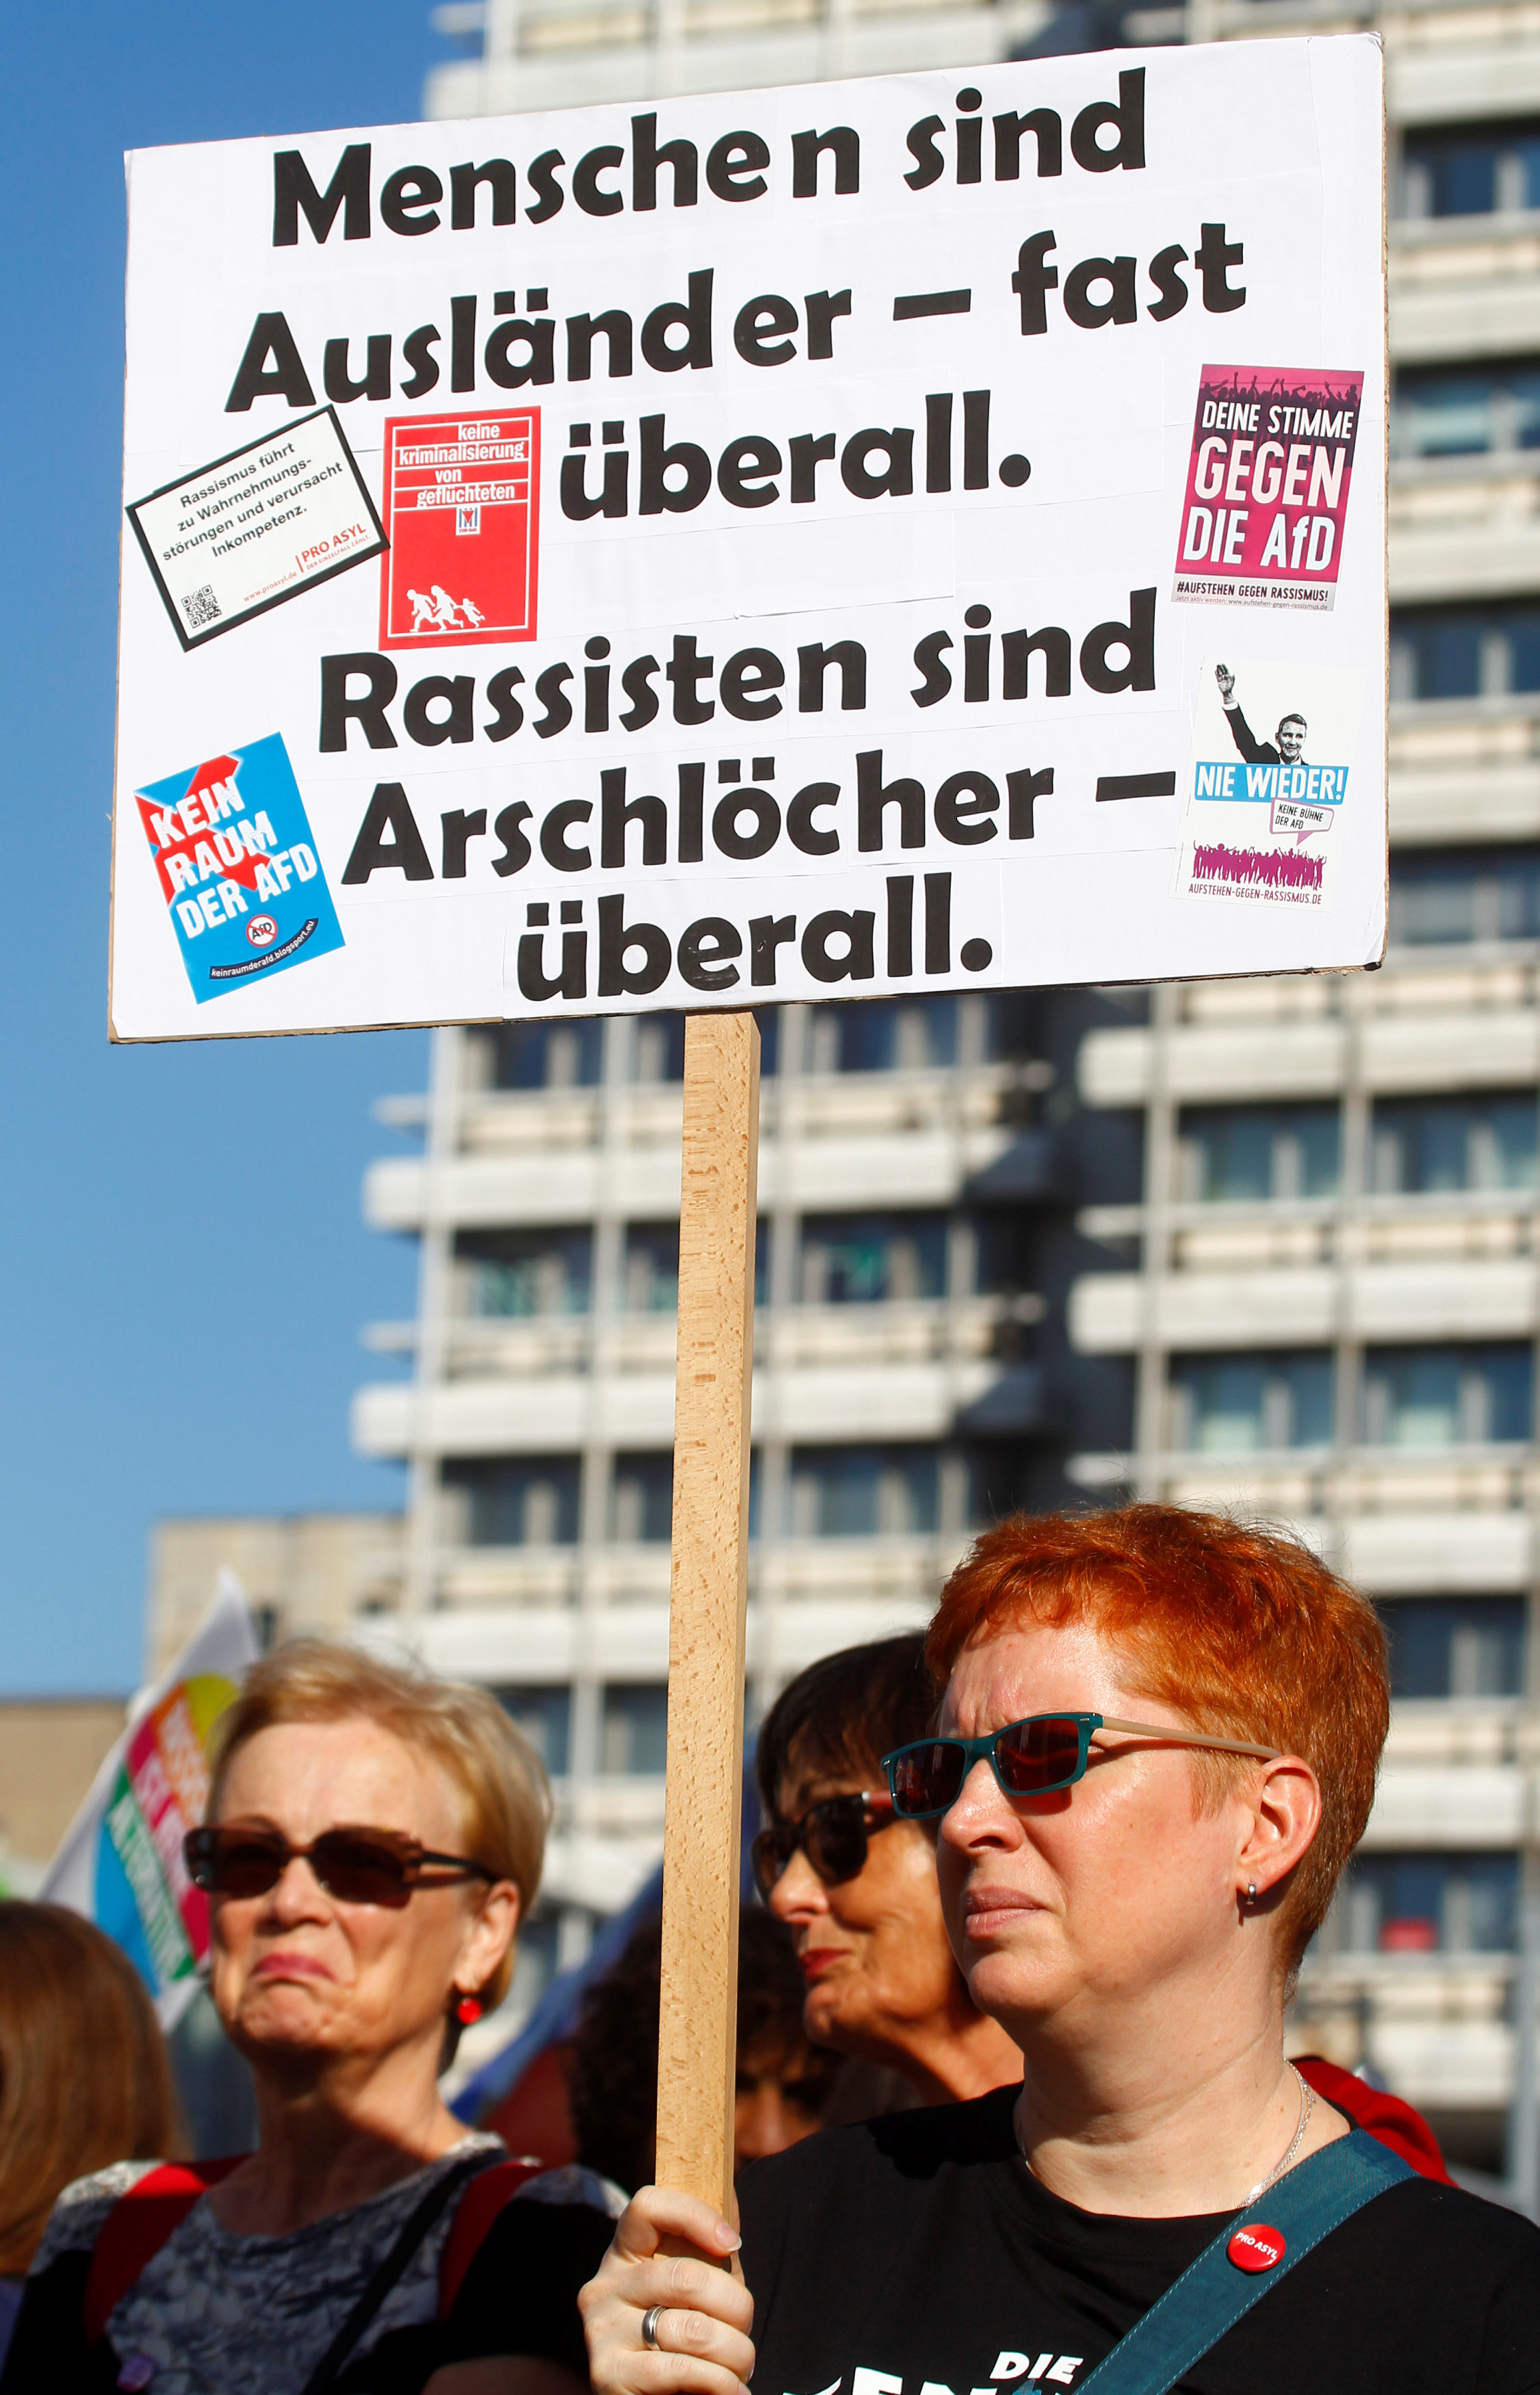 الألمان يتظاهرون ضد سياسة الهجرة